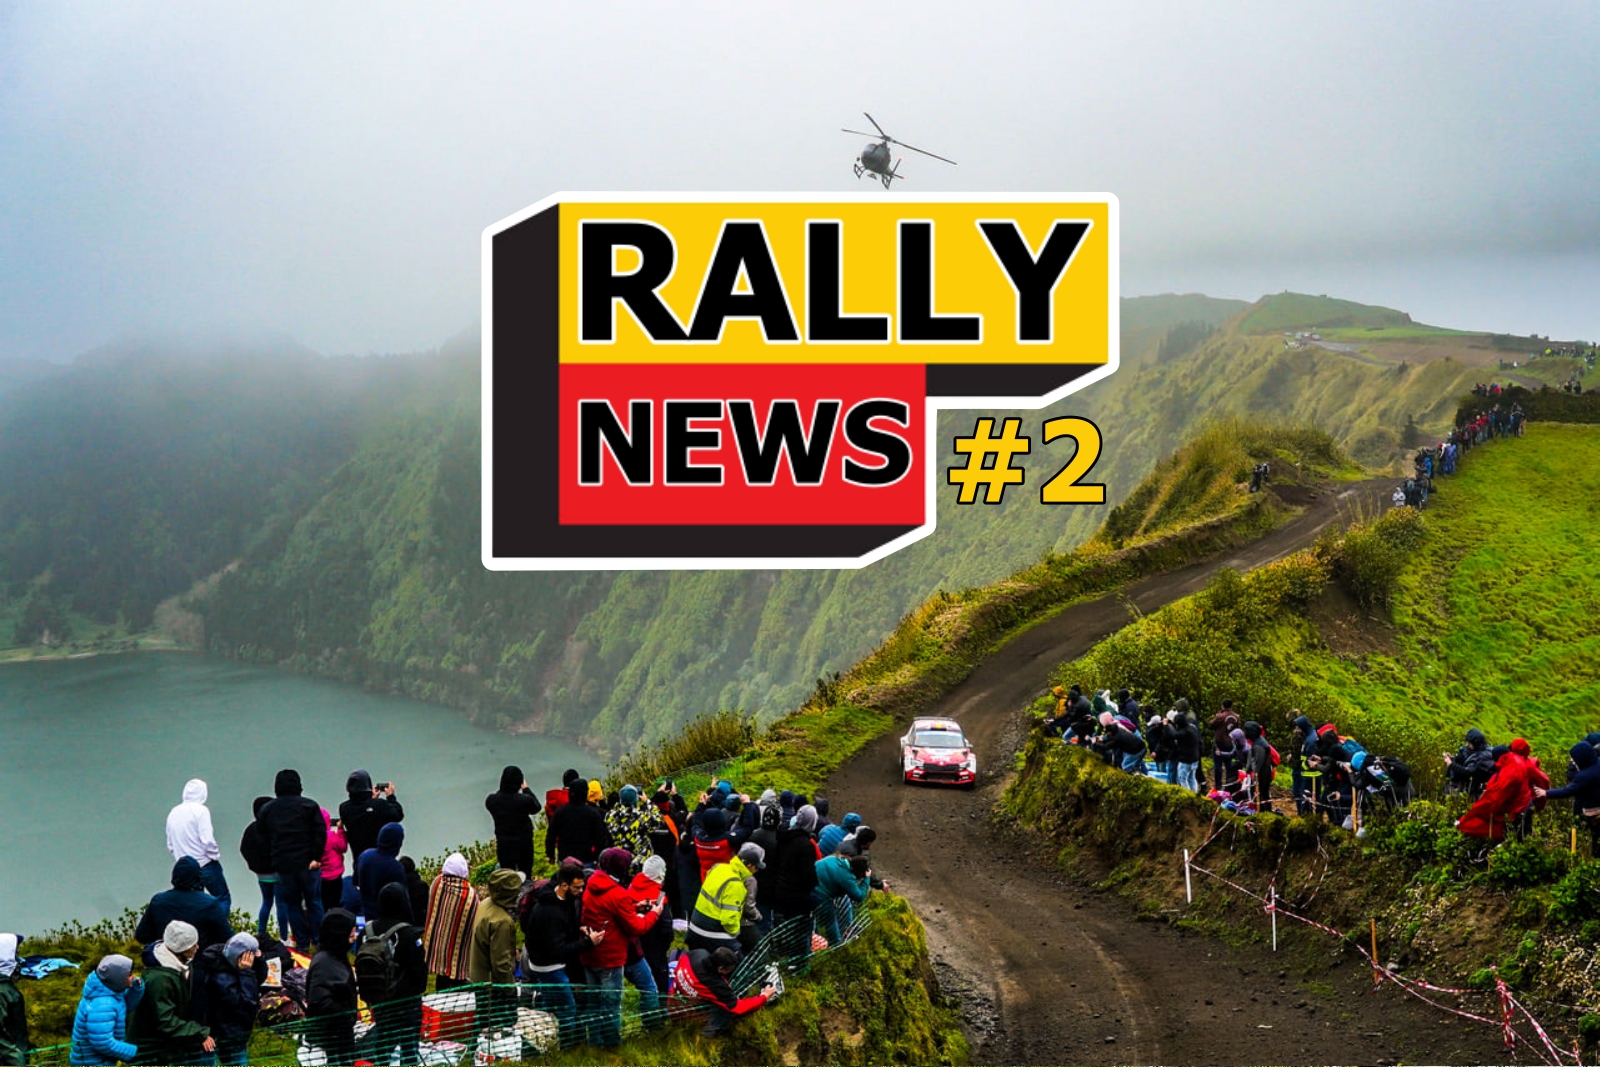 Rally News #2 – Noutățile din perioada 21 martie – 5 aprilie 2022